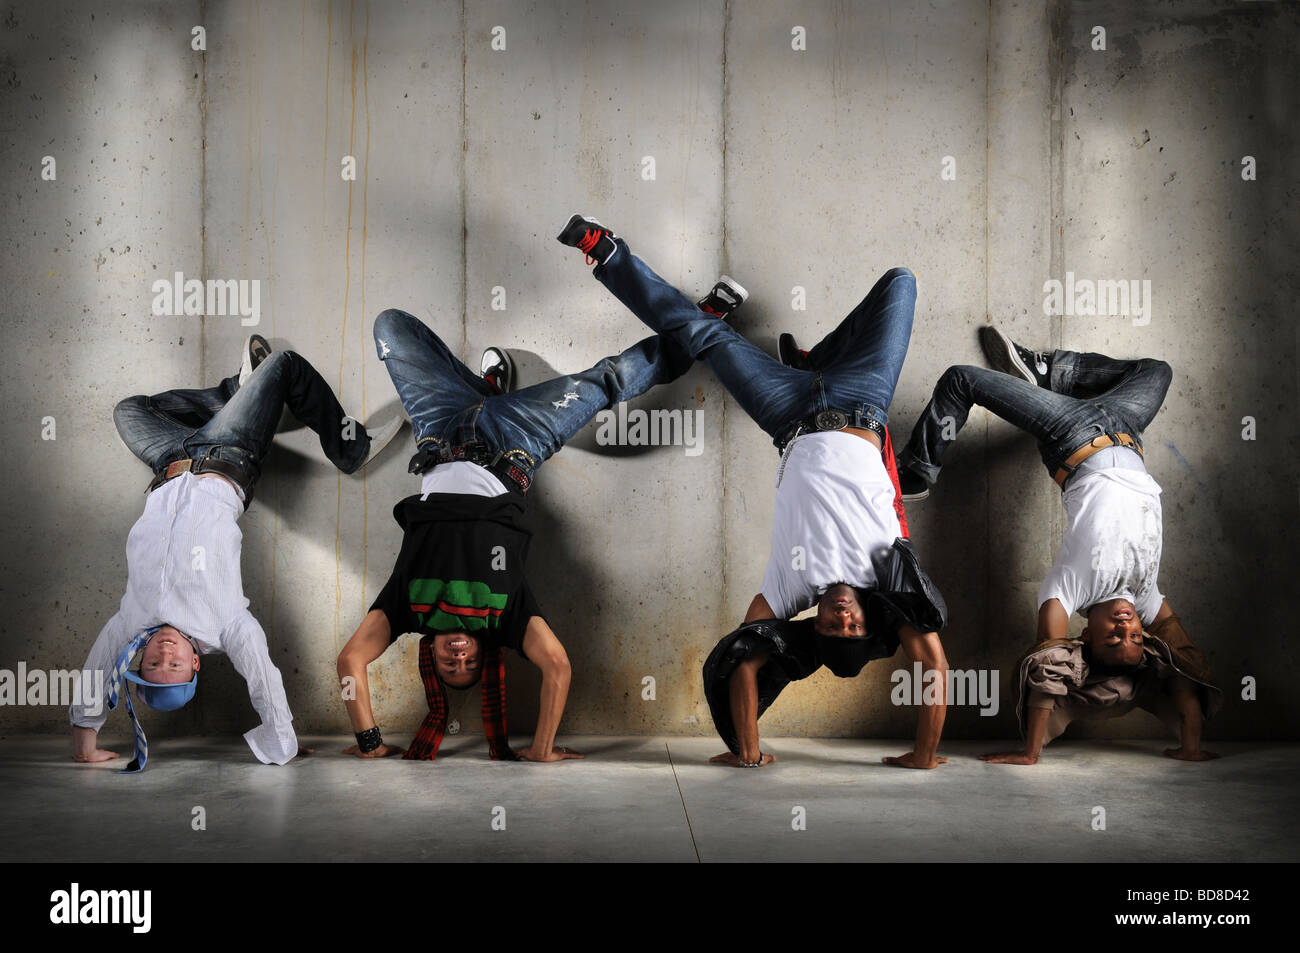 Les hommes de la danse hip hop de la scène avec l'atr sur grunge background Banque D'Images